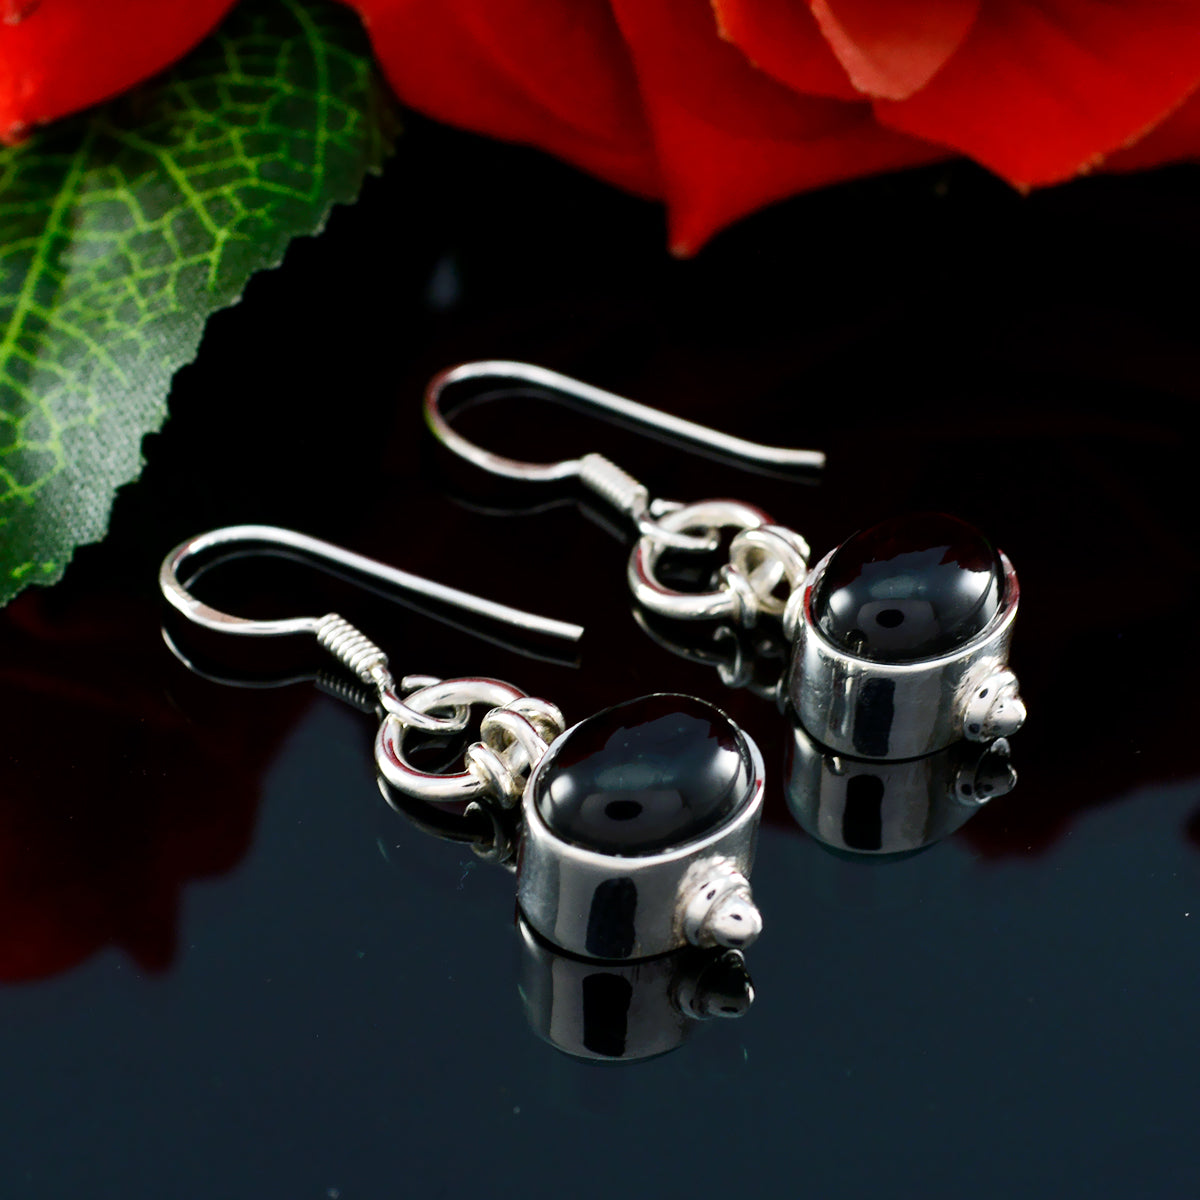 Riyo Nice Gemstone oval Cabochon Black Onyx Silver Earring graduation gift